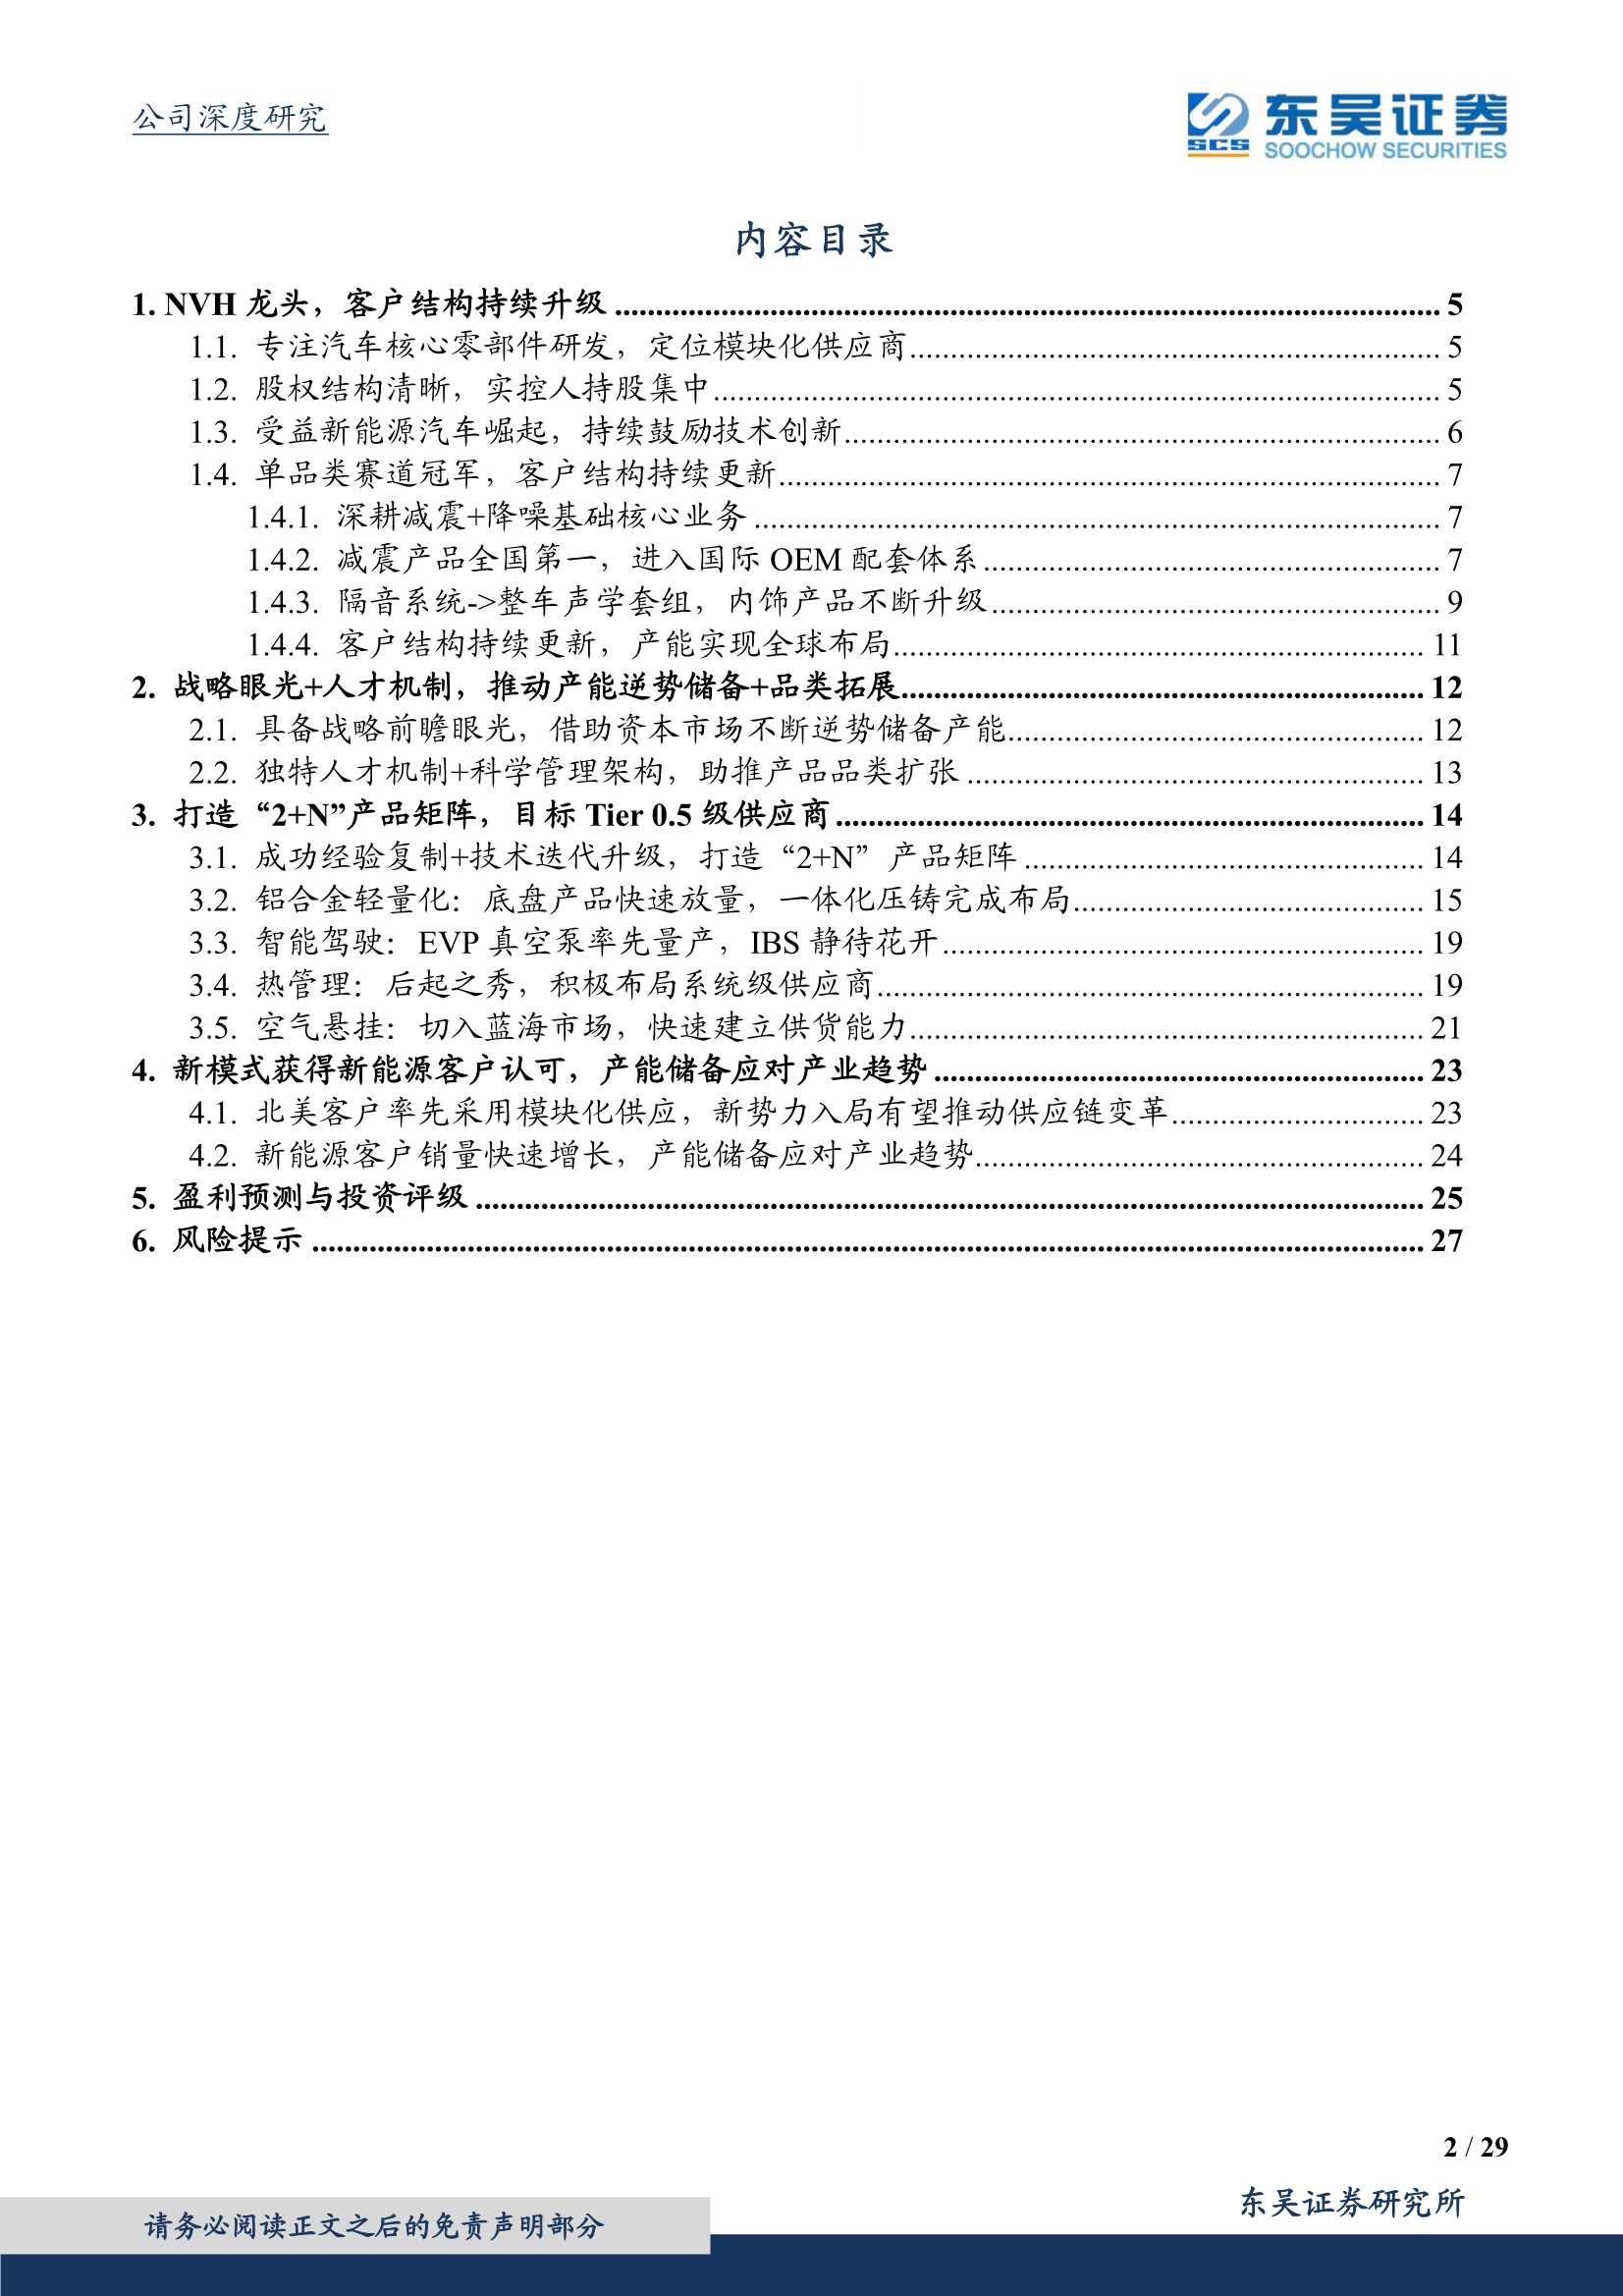 东吴证券-拓普集团-601689-打造世界级Tier0.5供应商-20220221-29页